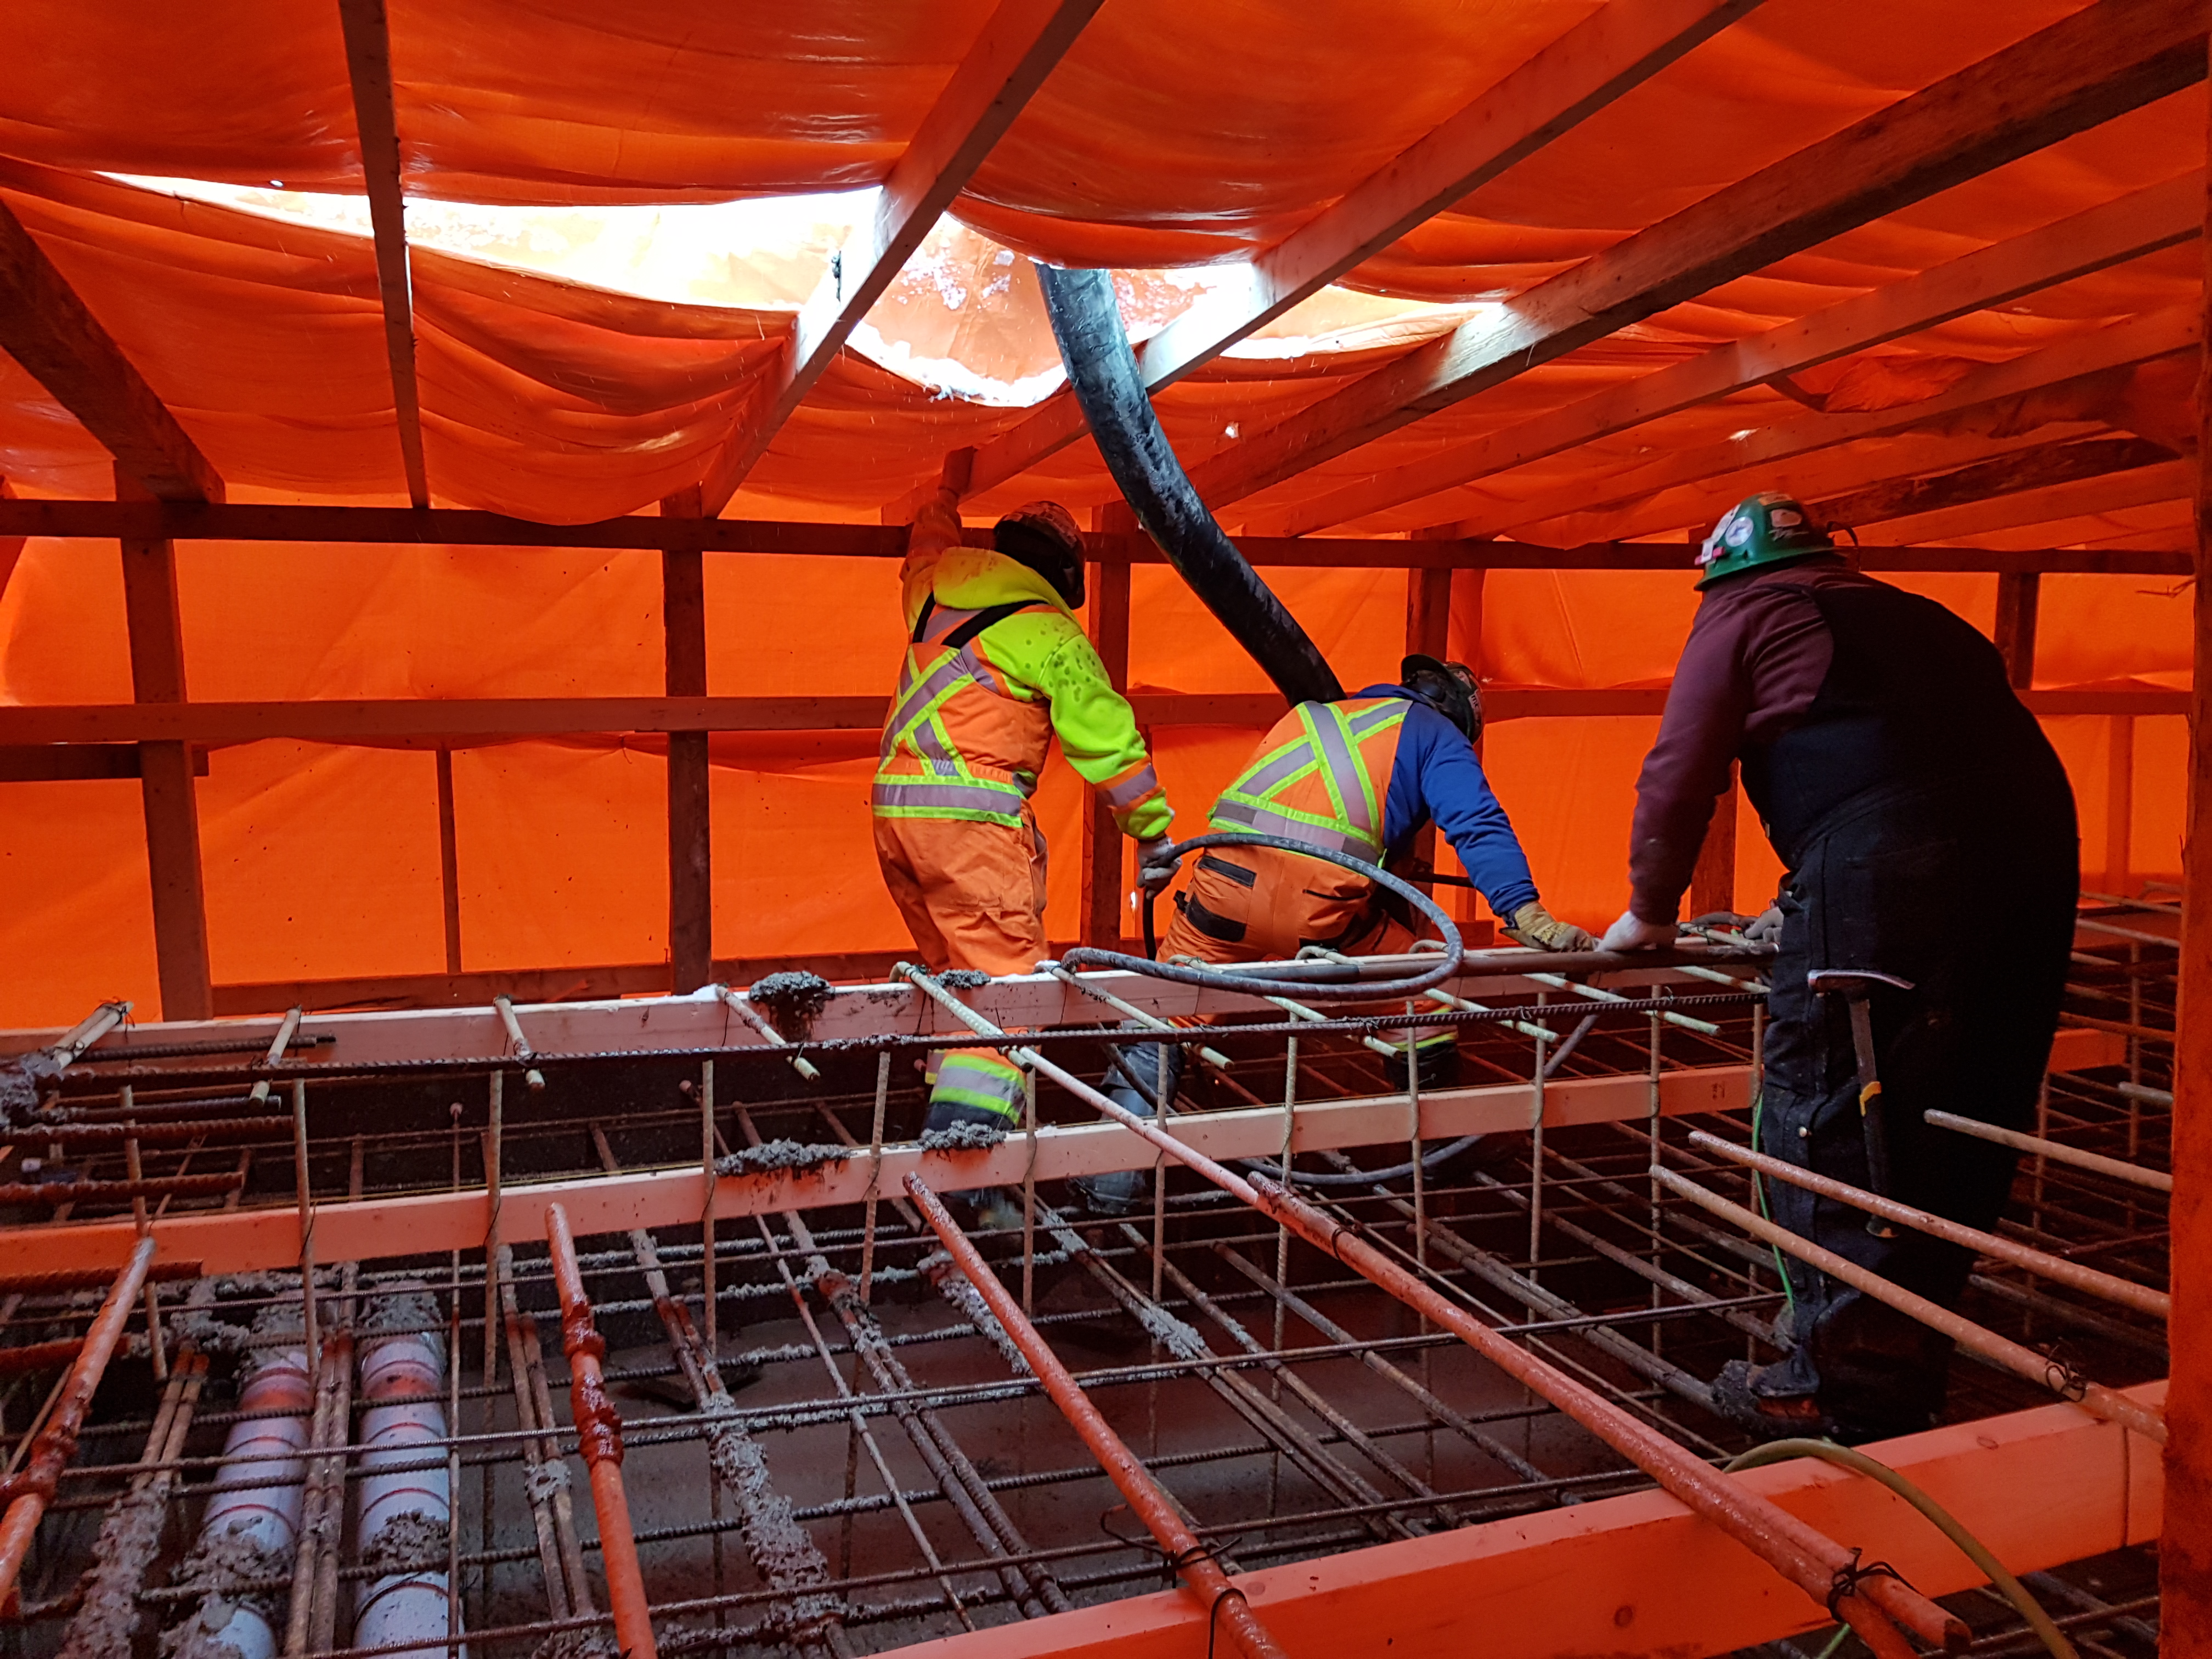 Men work under an orange tarp.